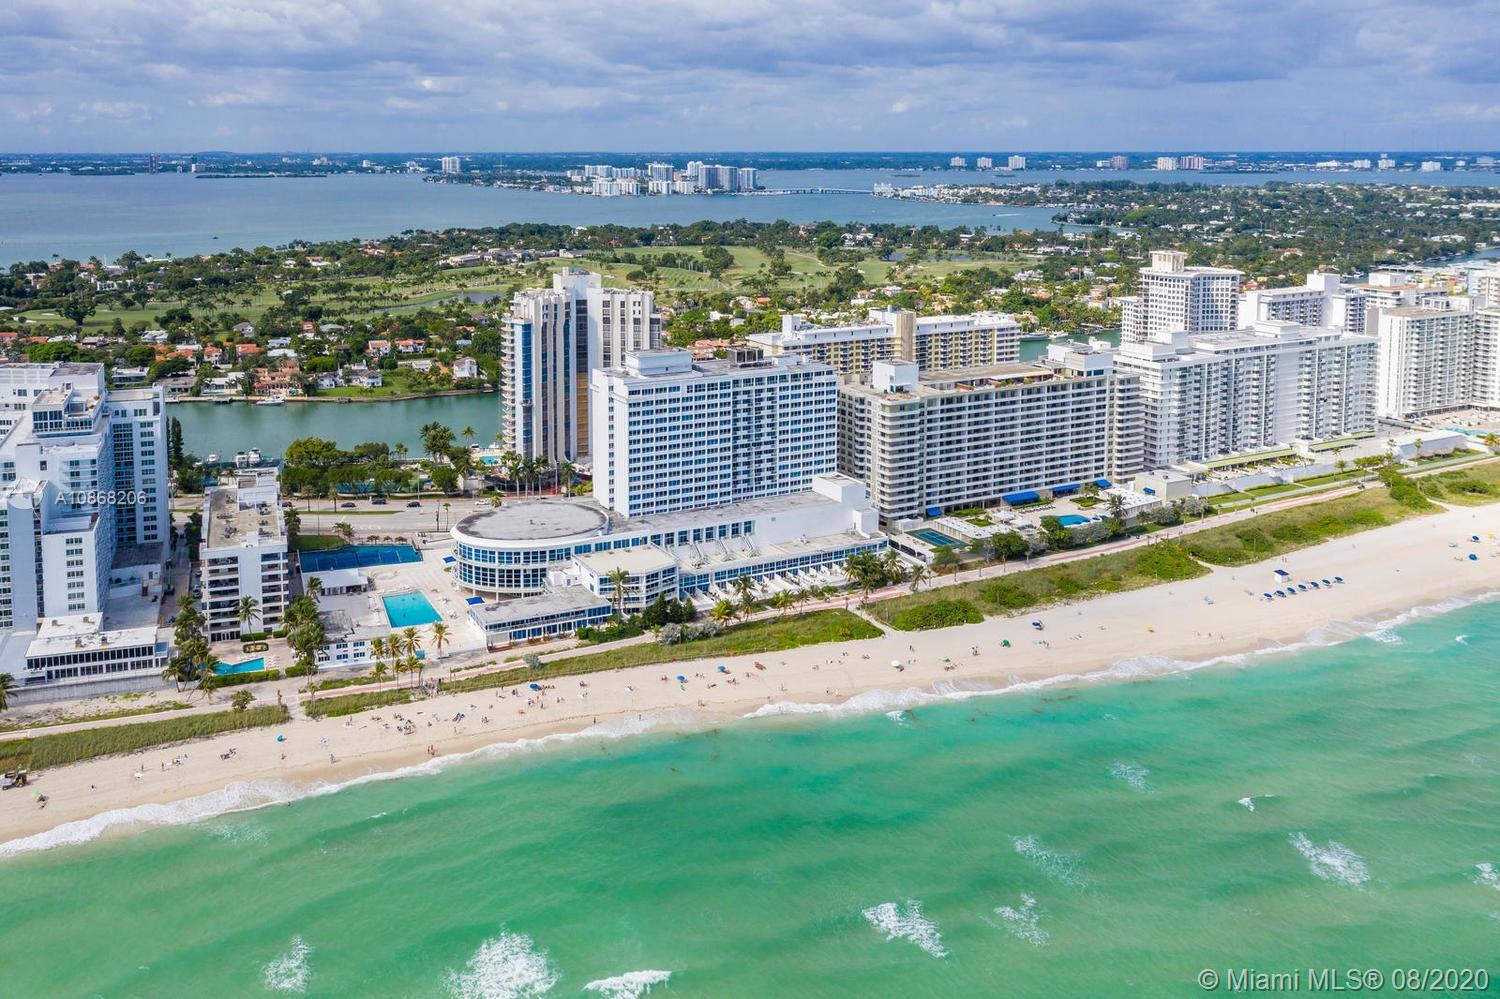 Castle Beach Club Unit #428 Condo for Sale in Mid-Beach - Miami Beach